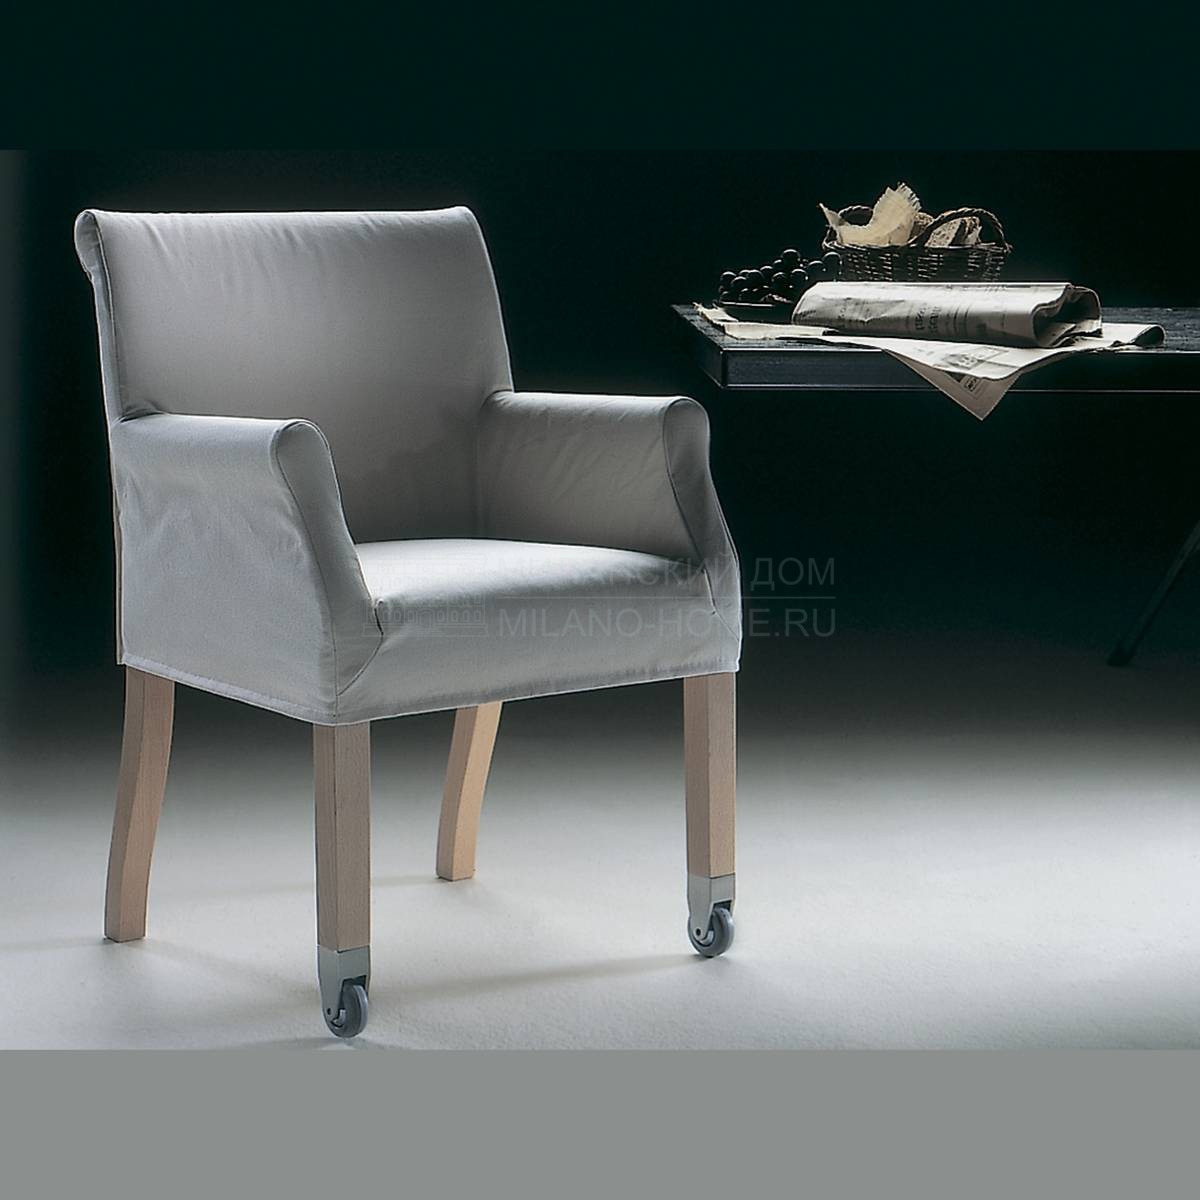 Кресло Pausa/ armchair из Италии фабрики FLEXFORM